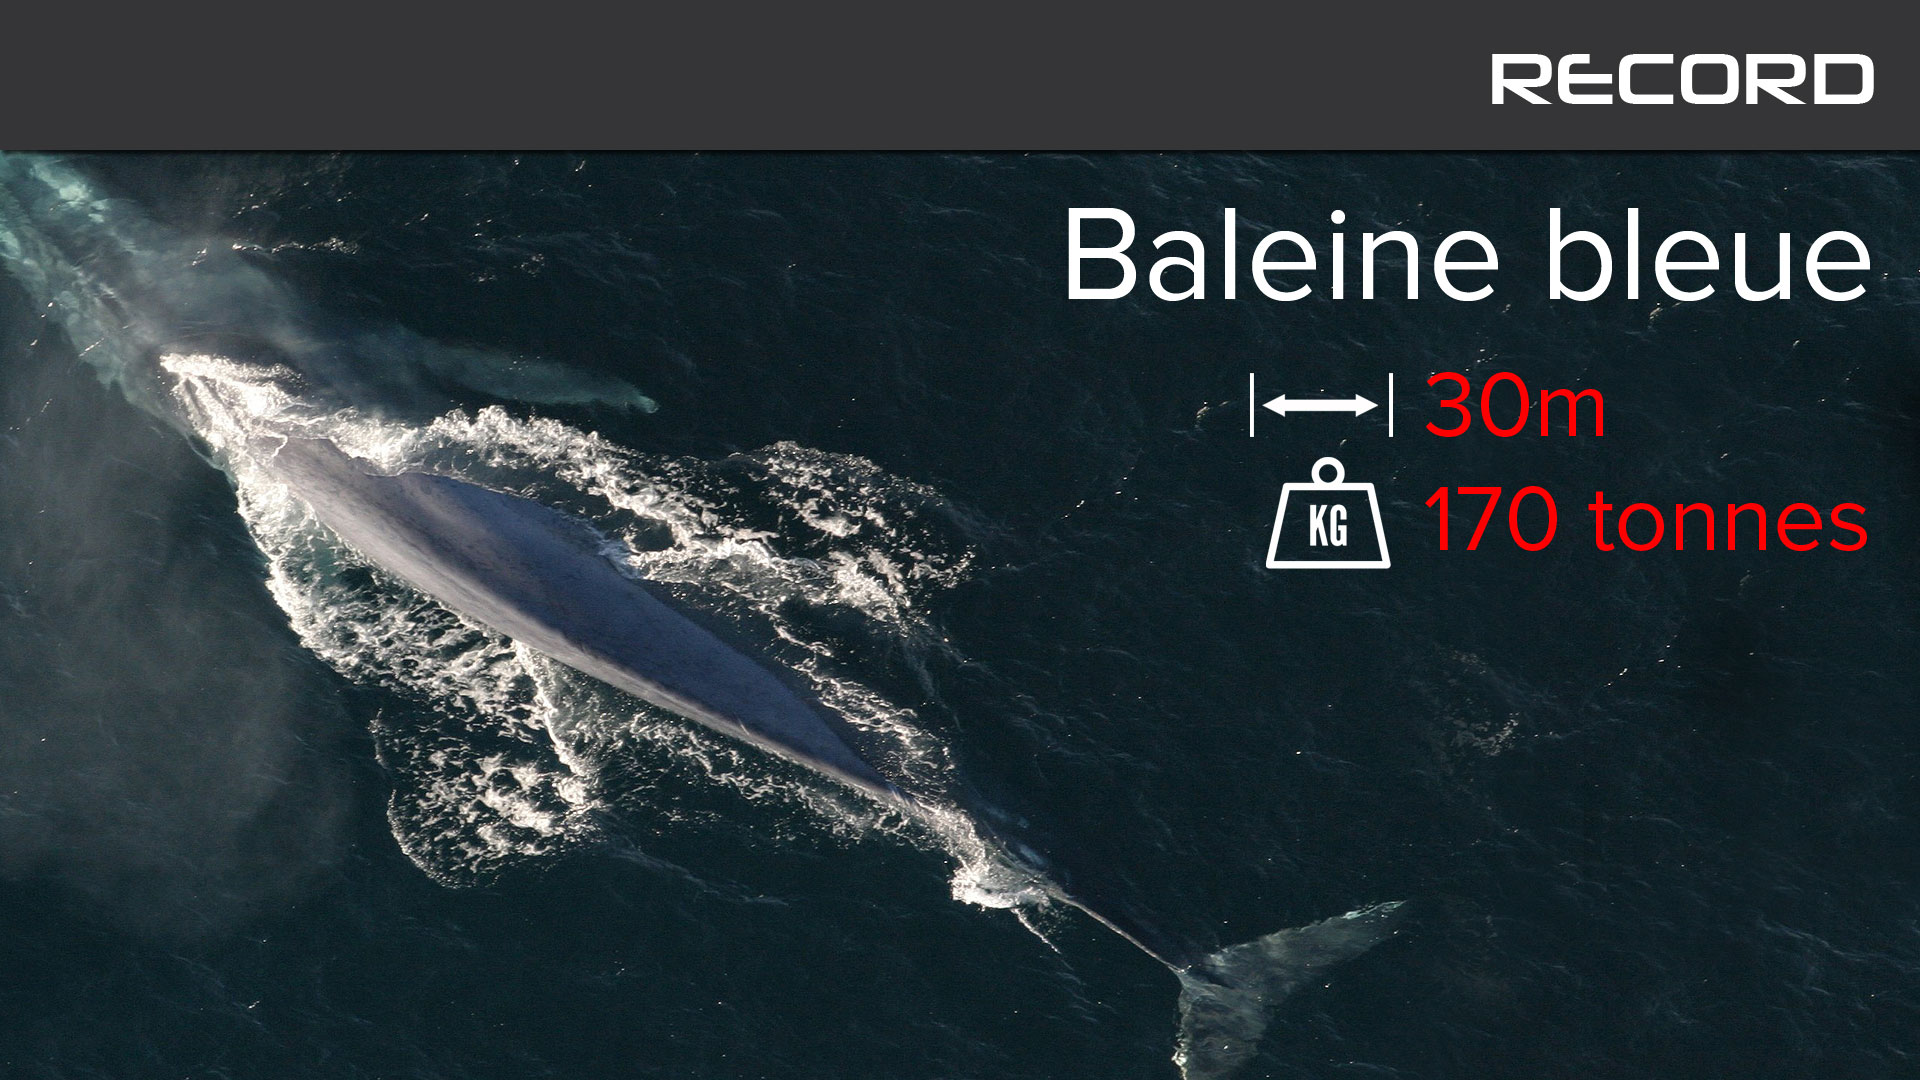 La baleine bleue, un cétacé qui bat tous les records